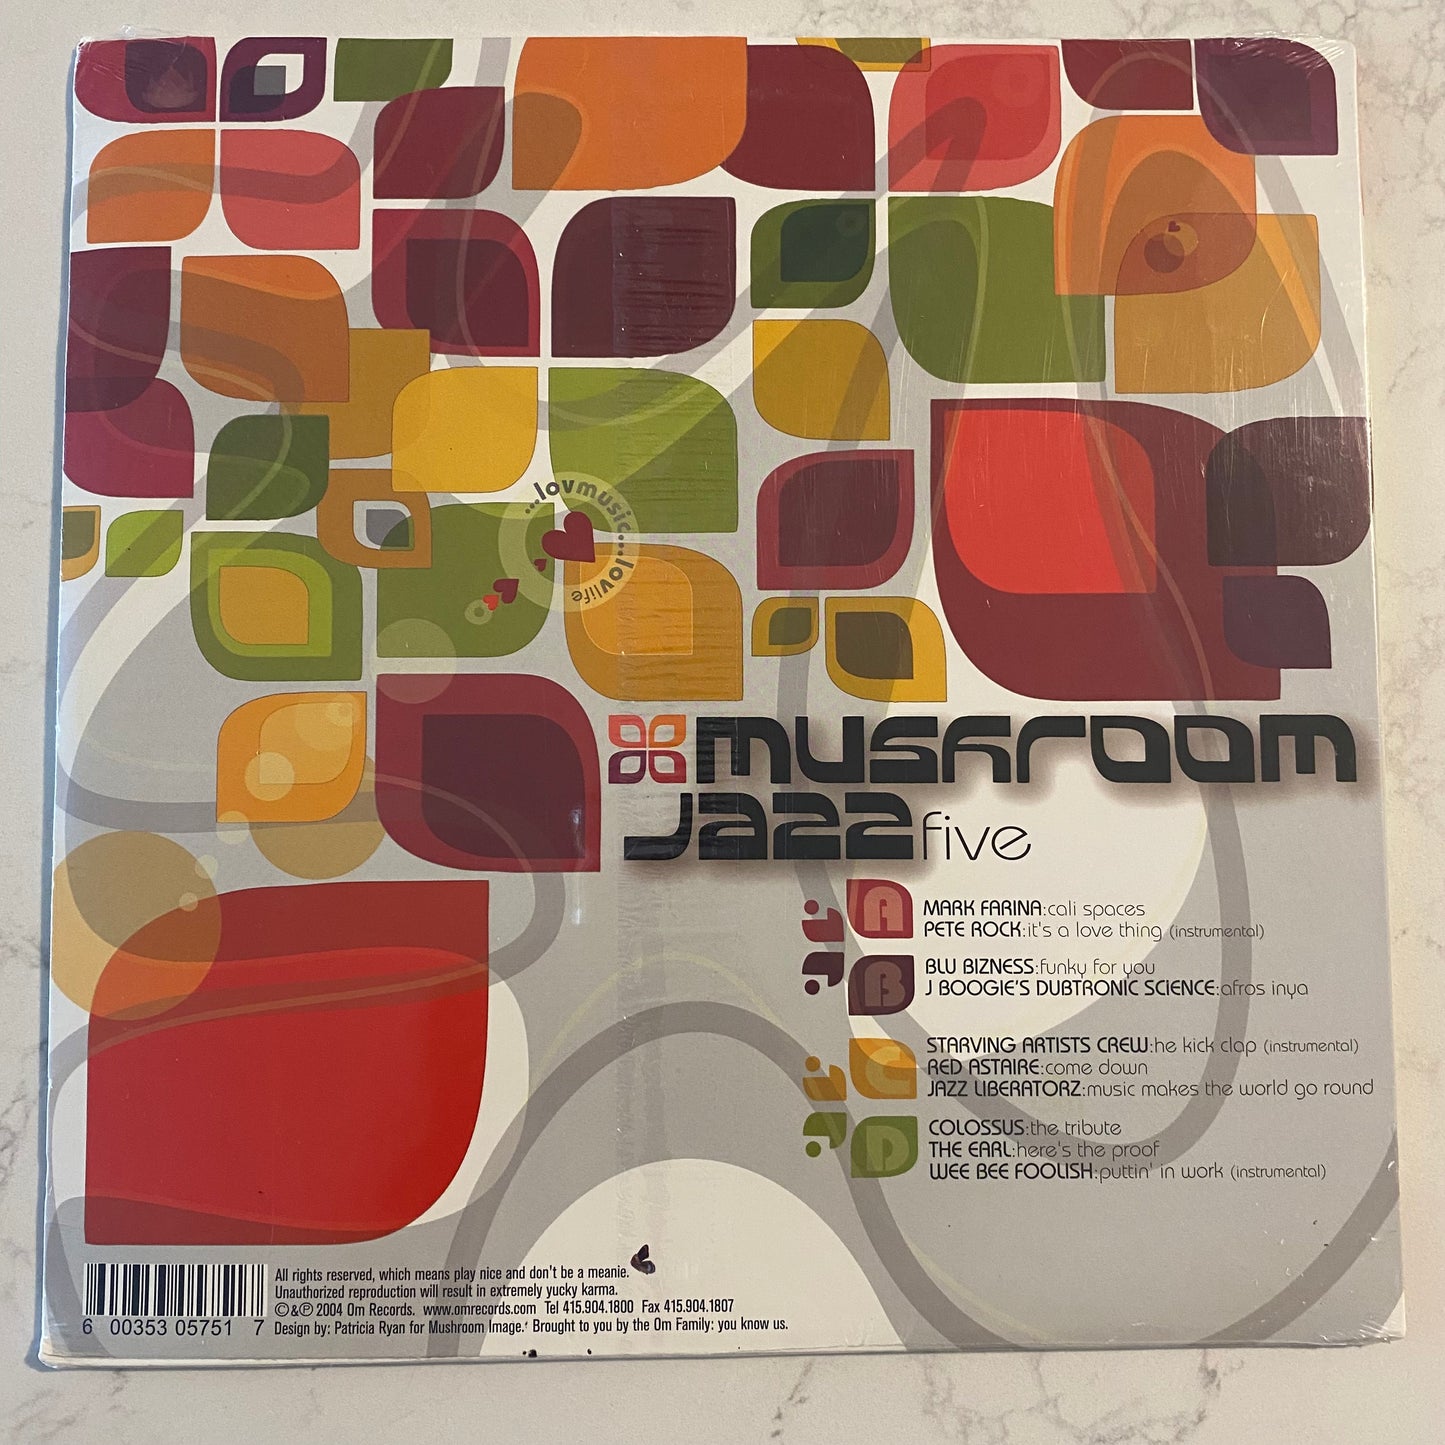 DJ Mark Farina* - Mushroom Jazz Volume Five (2xLP, Comp)  SEALED!! (L)